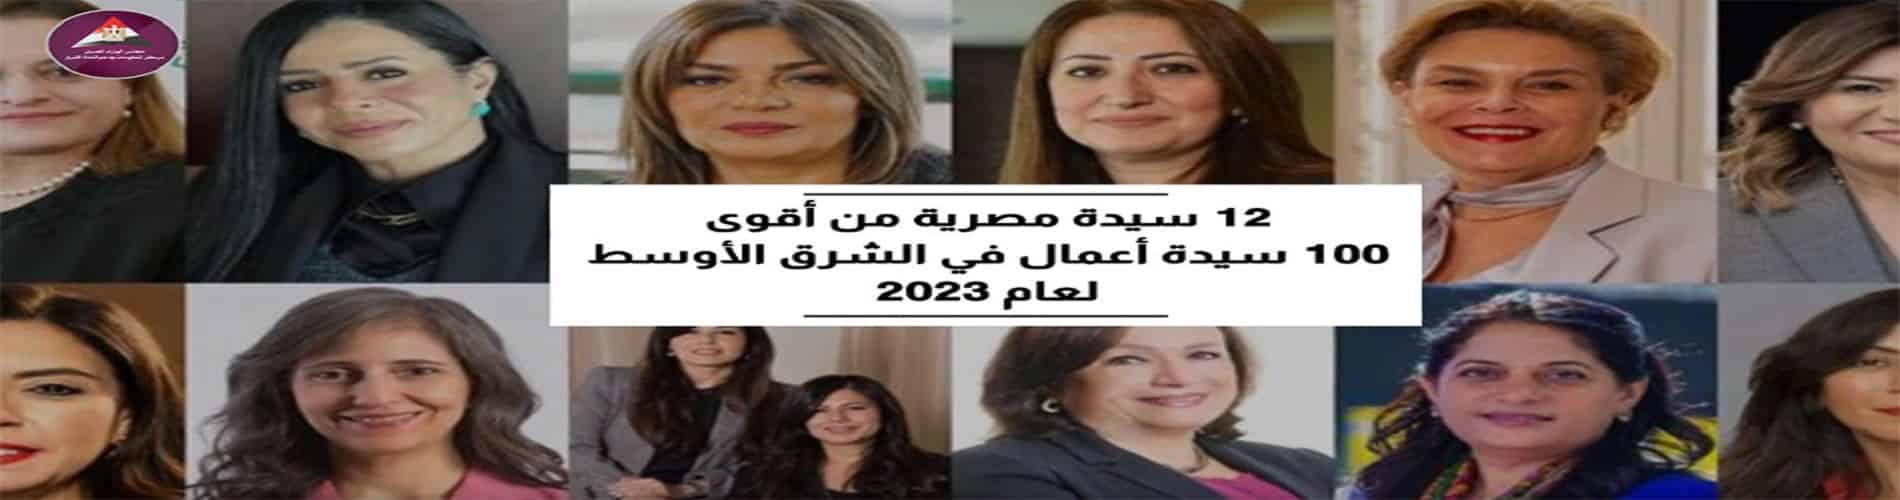  12 سيدة مصرية من أقوى 100 سيدة أعمال في الشرق الأوسط لعام 2023
